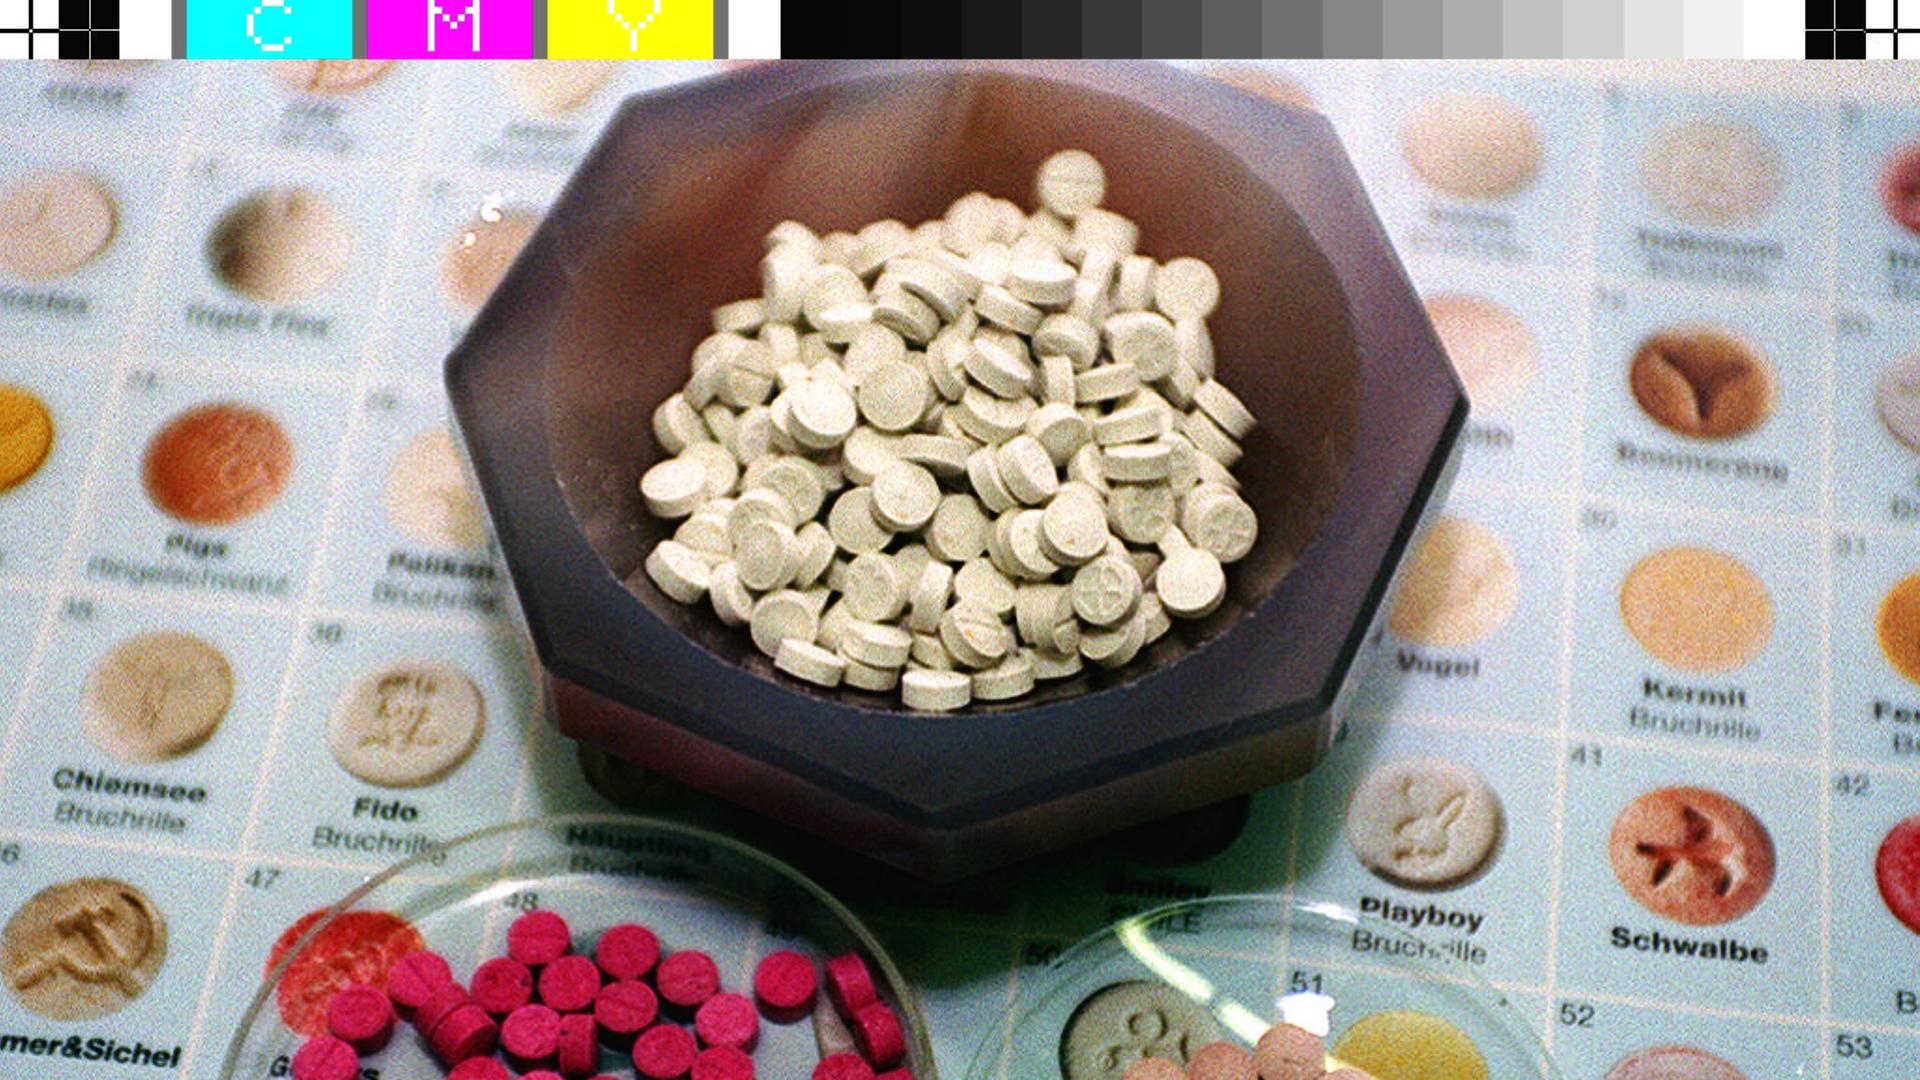 Extasy-Pillen werden in zahllosen verschiedenen Formen und Farben angeboten. Gemeinsam ist ihnen die lebensgefährliche Wirkung, wenn die Pillen gestreckt oder falsch eingenommen werden.